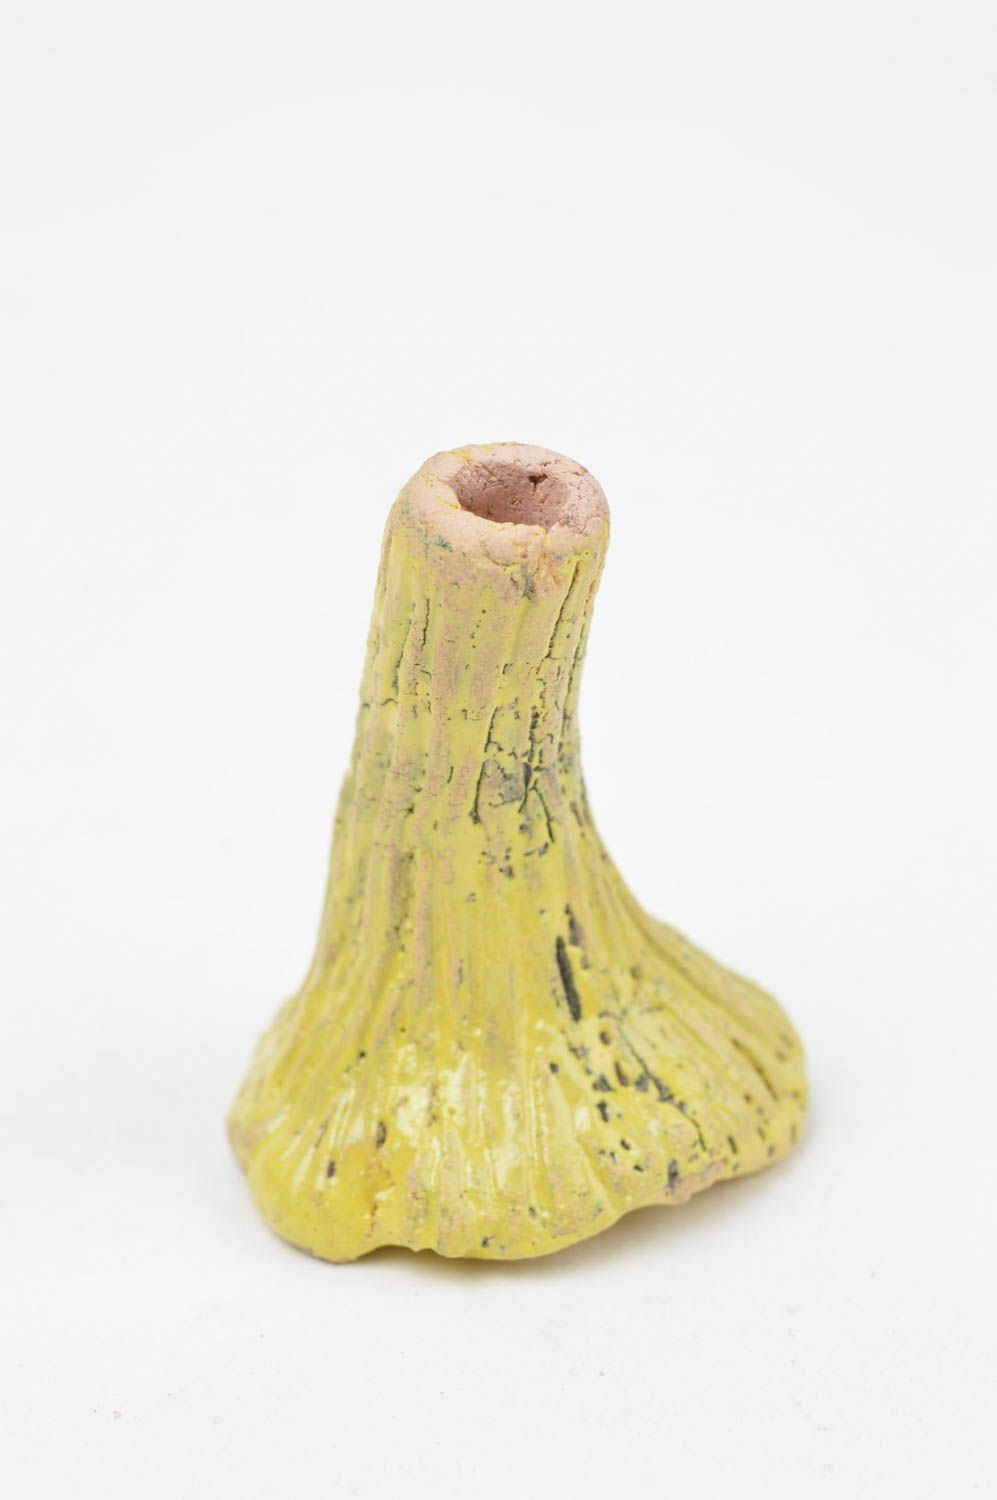 Originelle keramische Figur Pilz mit Bemalung schön künstlerische Handarbeit foto 4